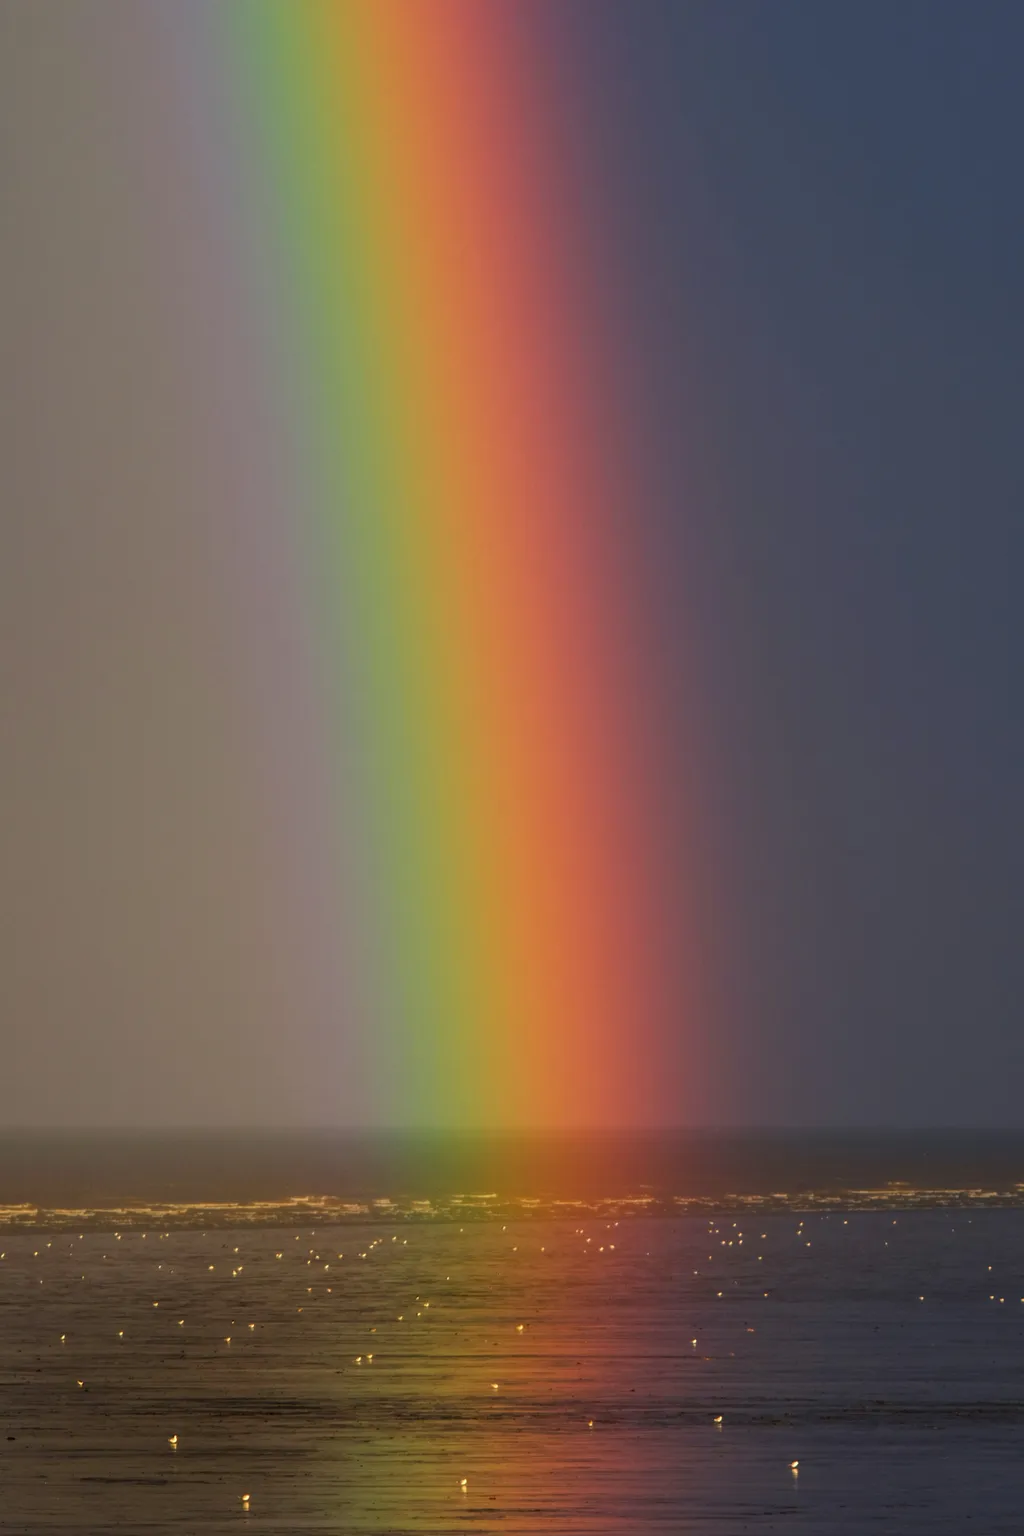 Os arco-íris são formados por luz nas cores vermelho, laranja, amarelo, verde, azul, índigo e violeta (Imagem: Reprodução/Zoltan Tasi/Unsplash)